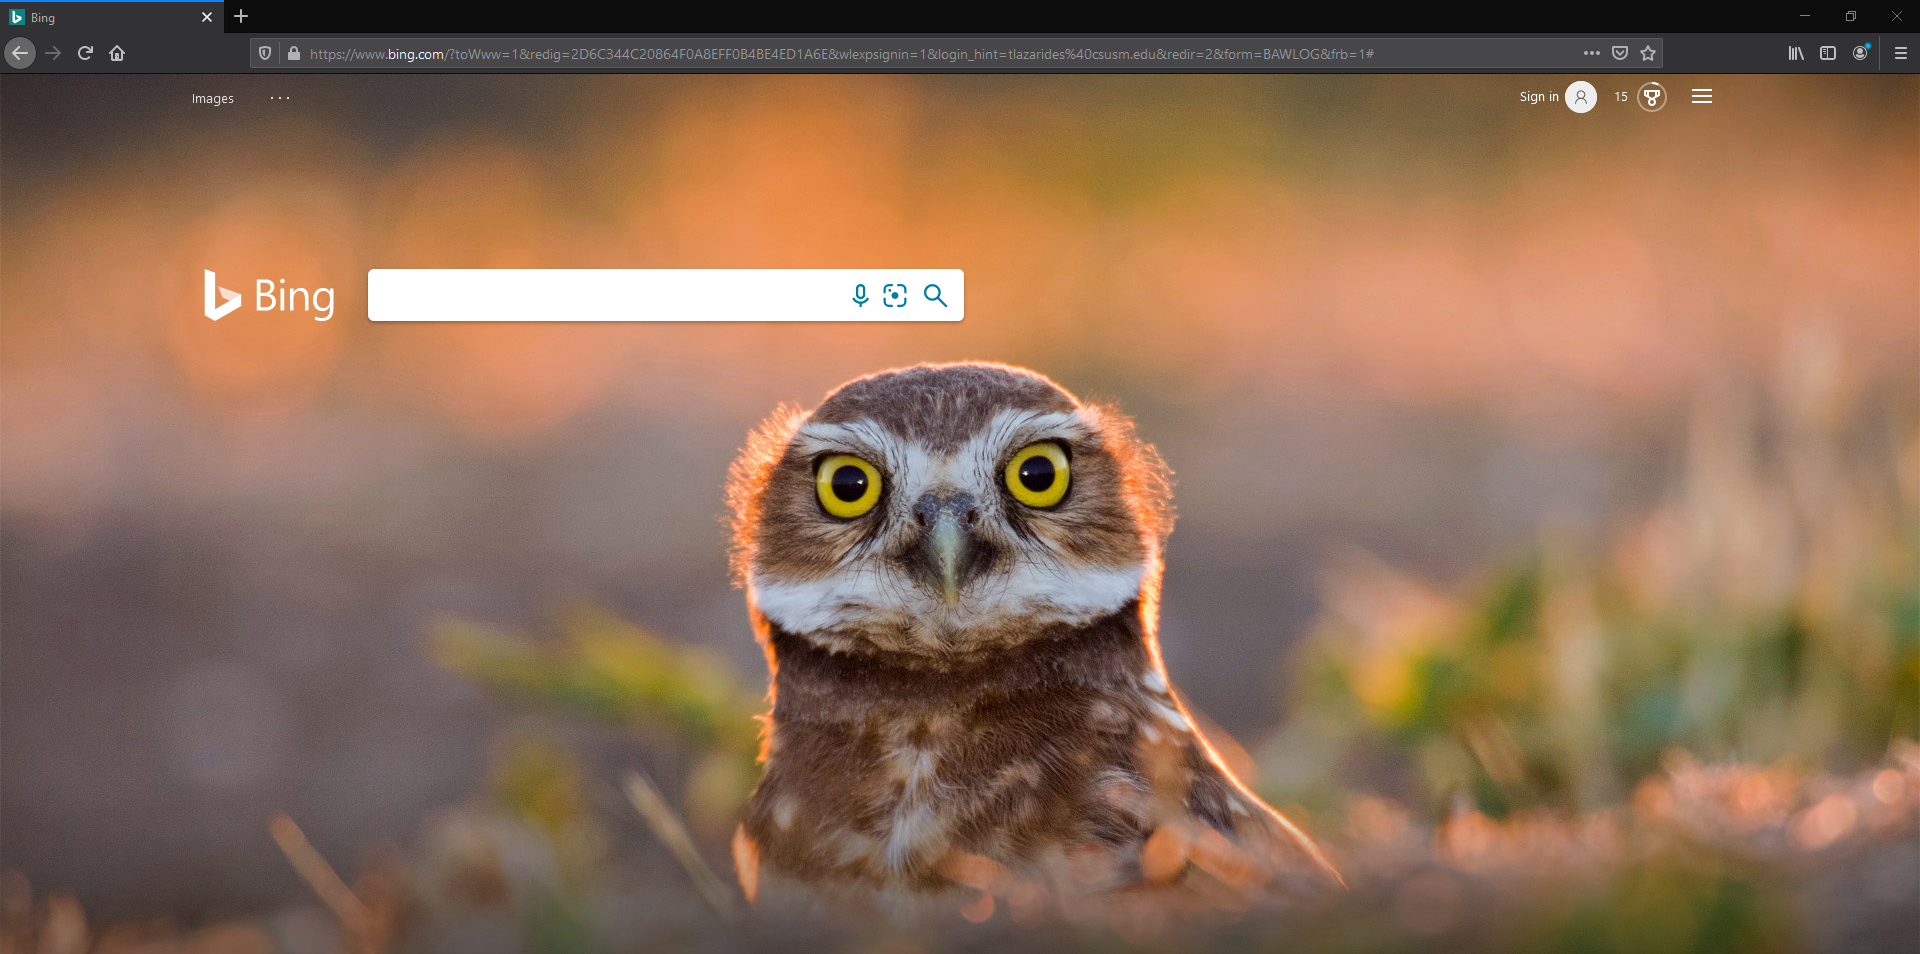 Bing website homepage